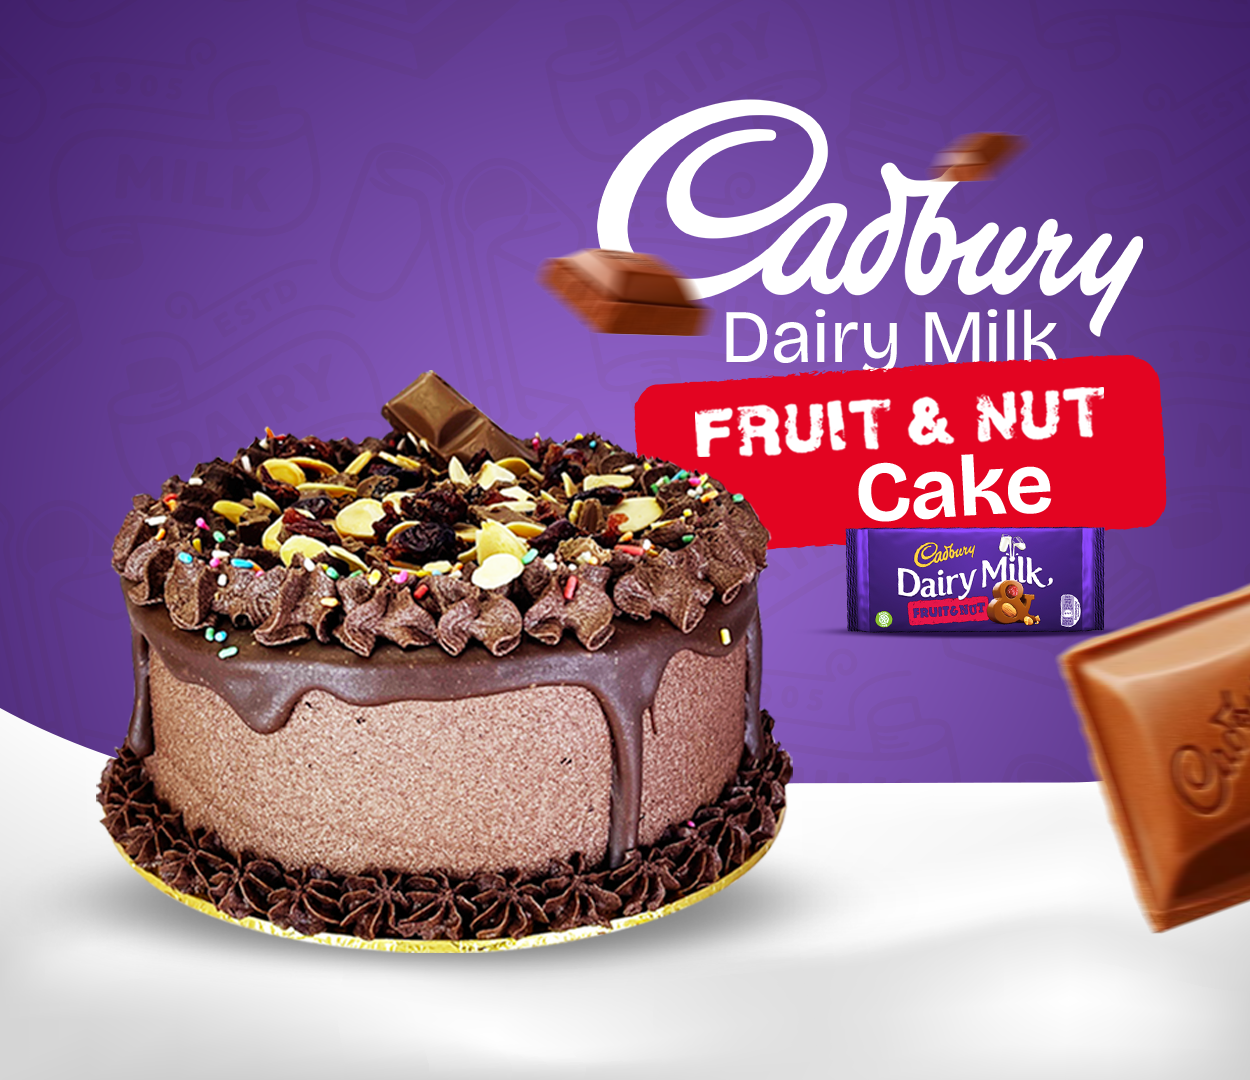 Cadbury Dairy Milk Fruit & Nut Cake